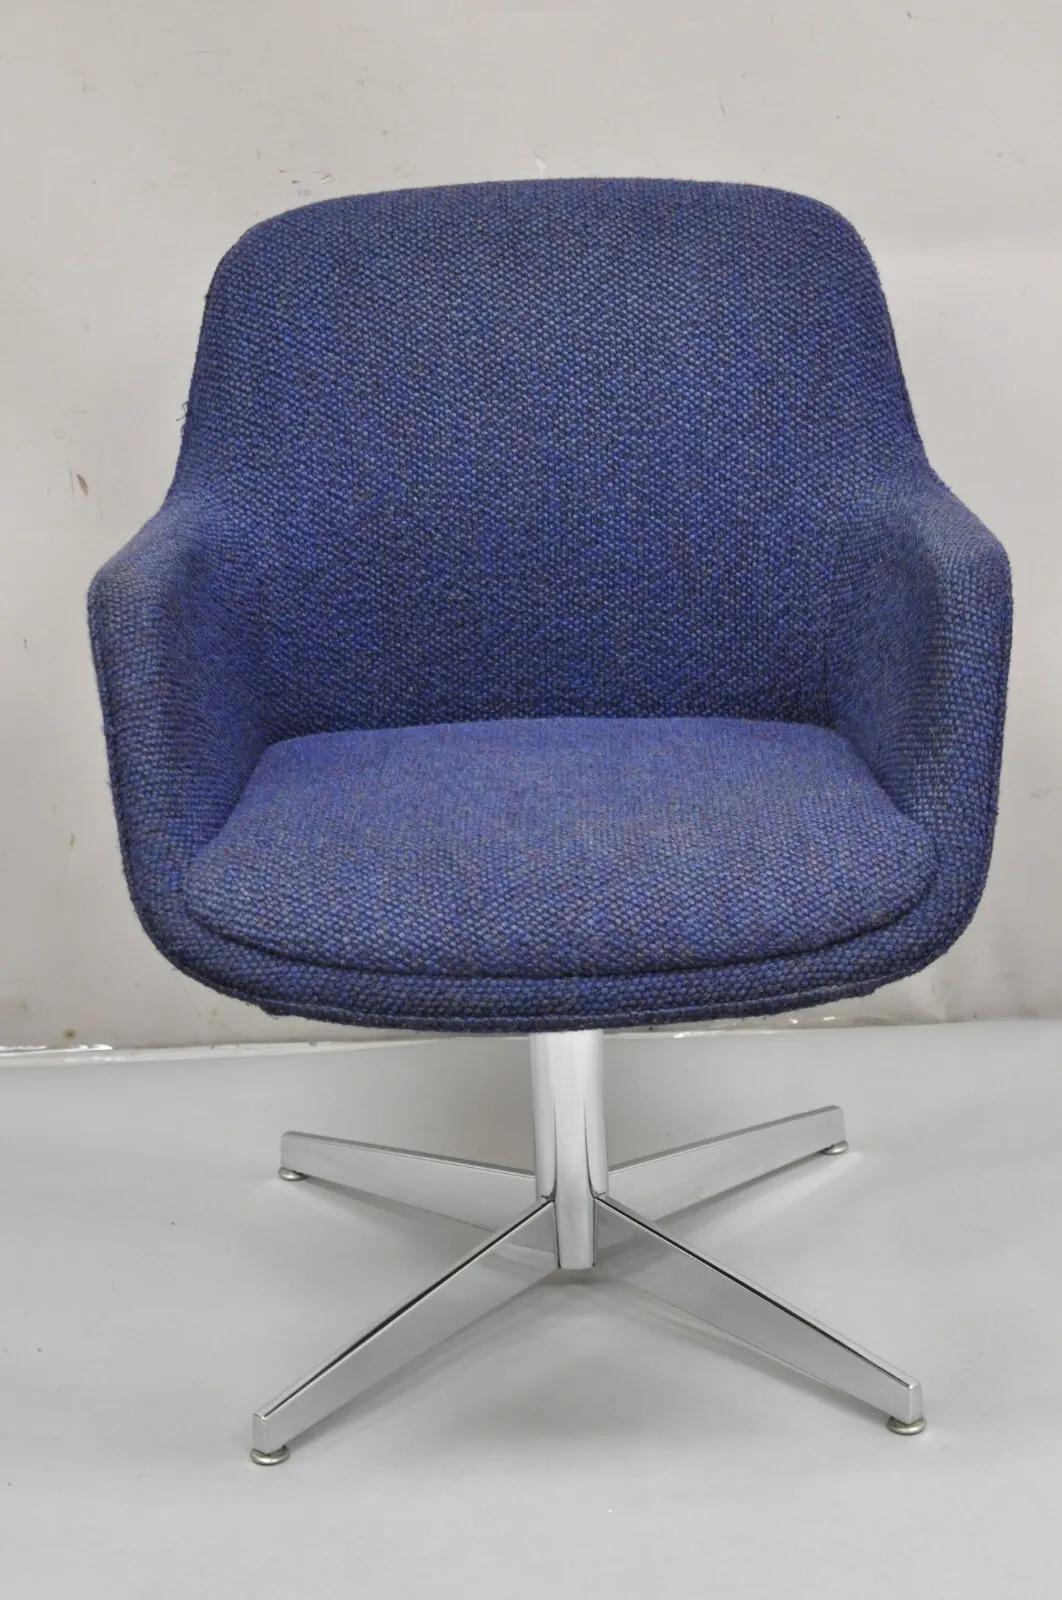 Vintage Mid Century Modern Blue Upholstered Chrome Swivel Base Club Arm Chair. Cet article se caractérise par un revêtement en laine bleue noueuse, une base pivotante chromée, des lignes modernistes épurées, un très bel article vintage. Circa  Fin